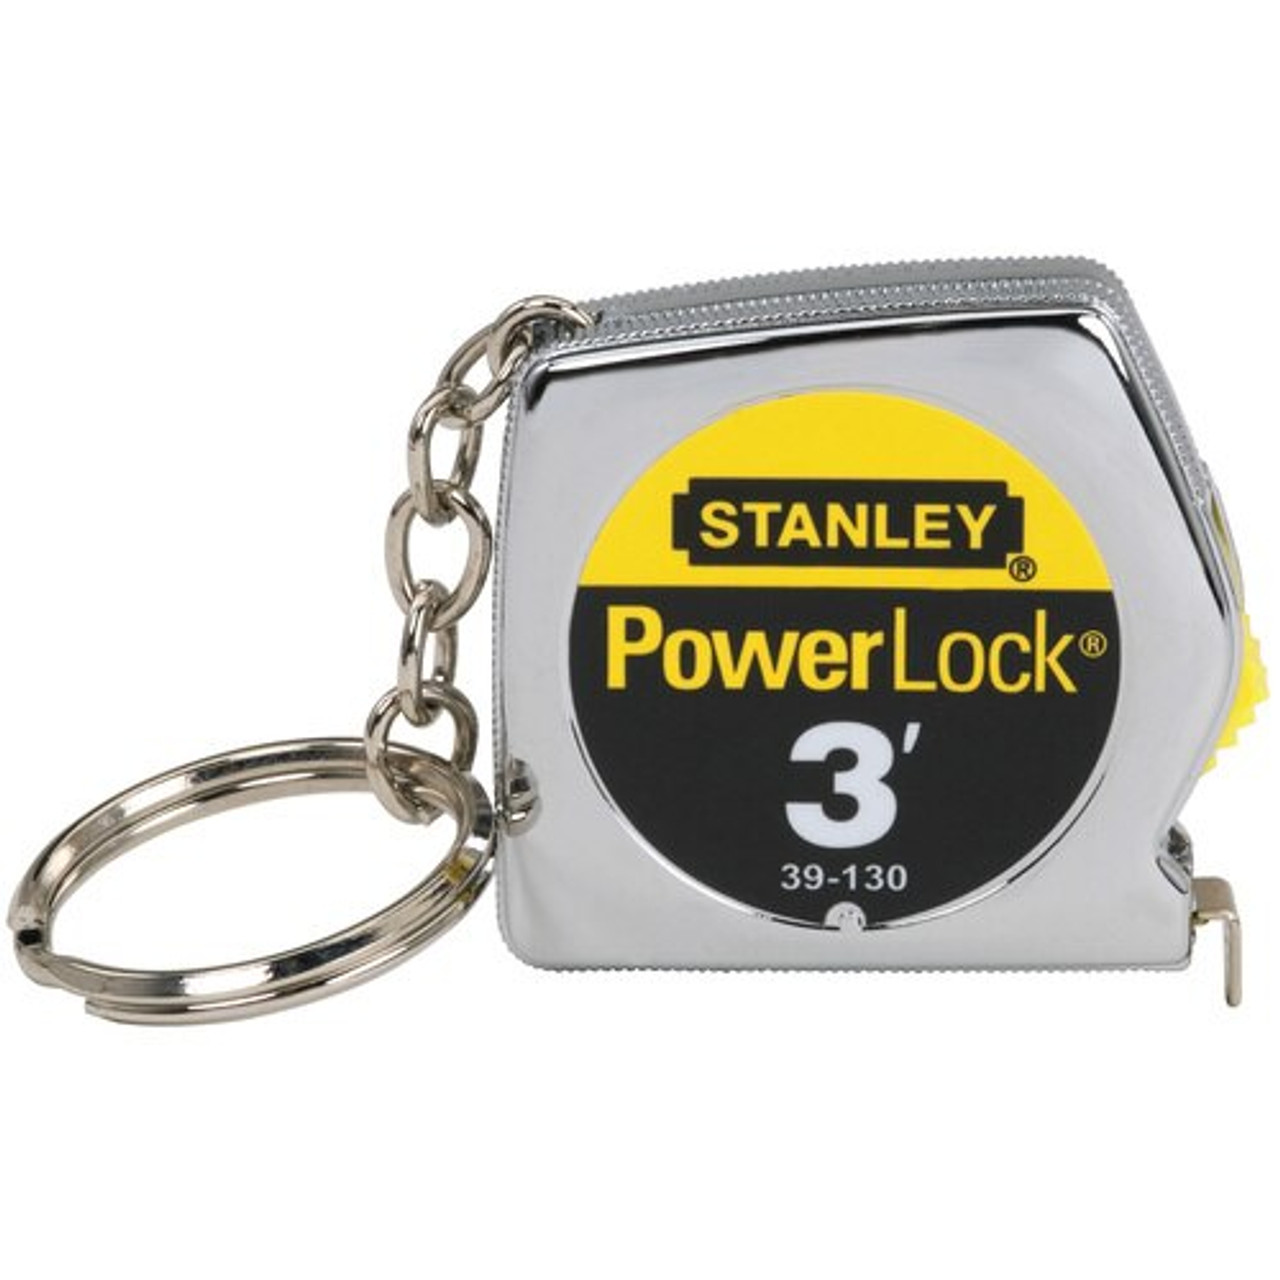 Stanley Tools 3 ft PowerLockÂ® Key Tape Measure 39-130